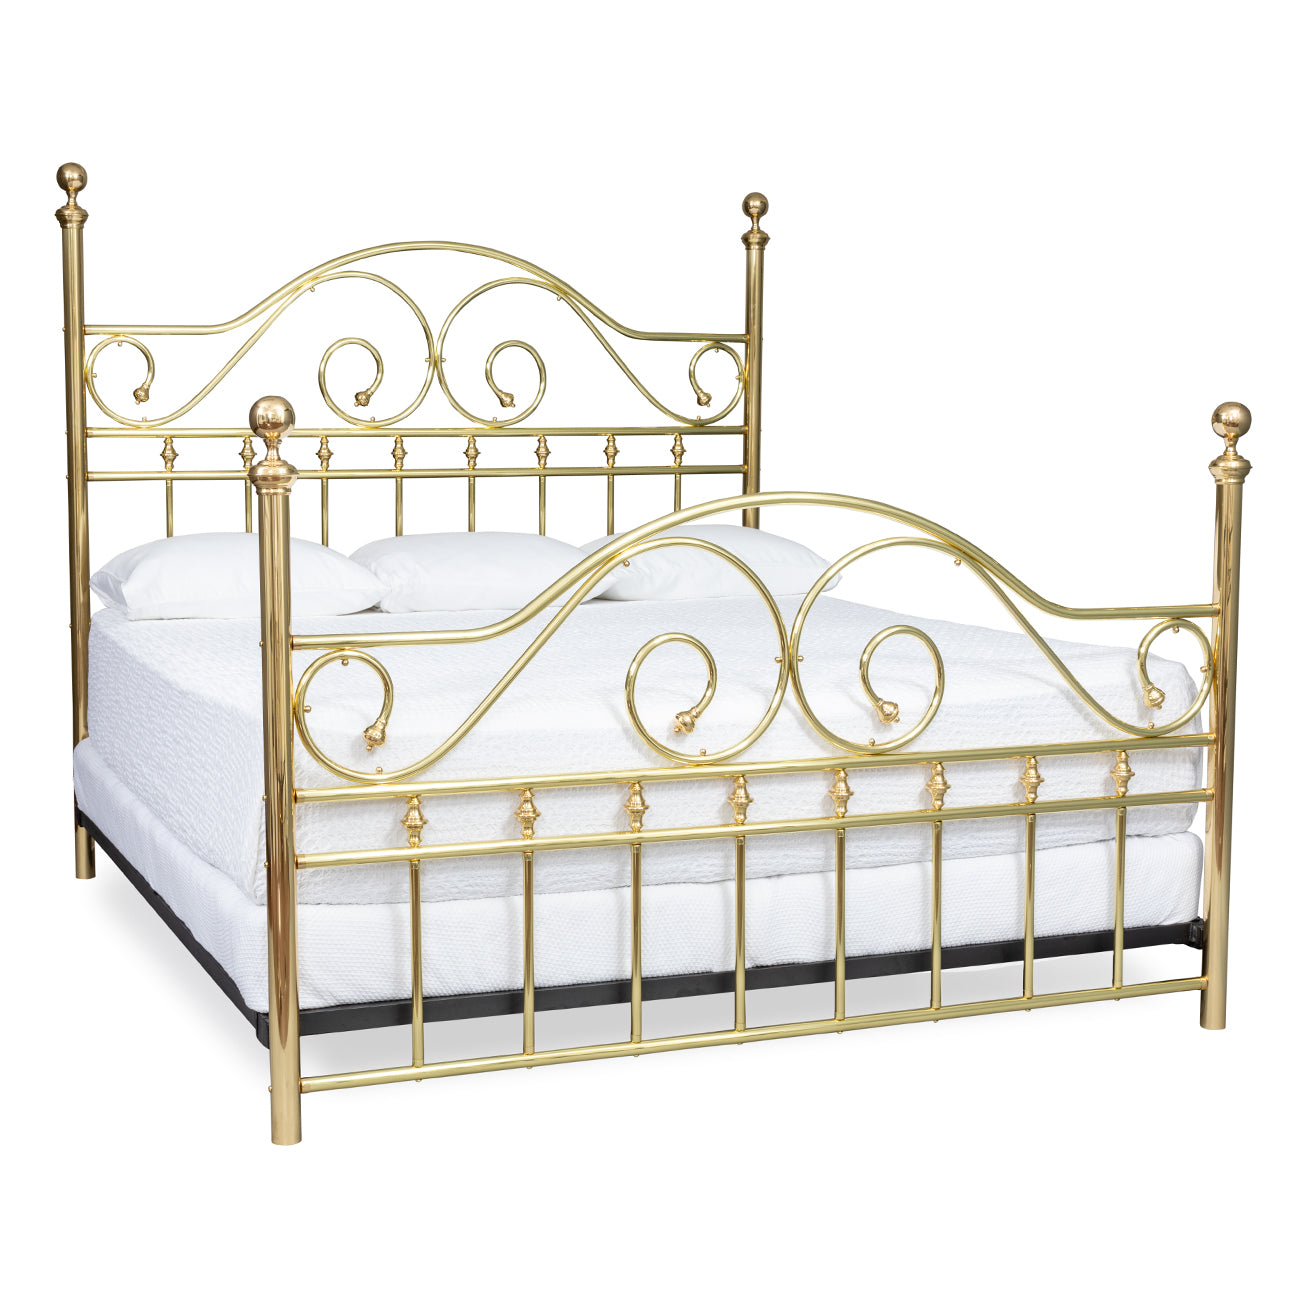 Centennial Brass Bed – Brass Beds of Virginia